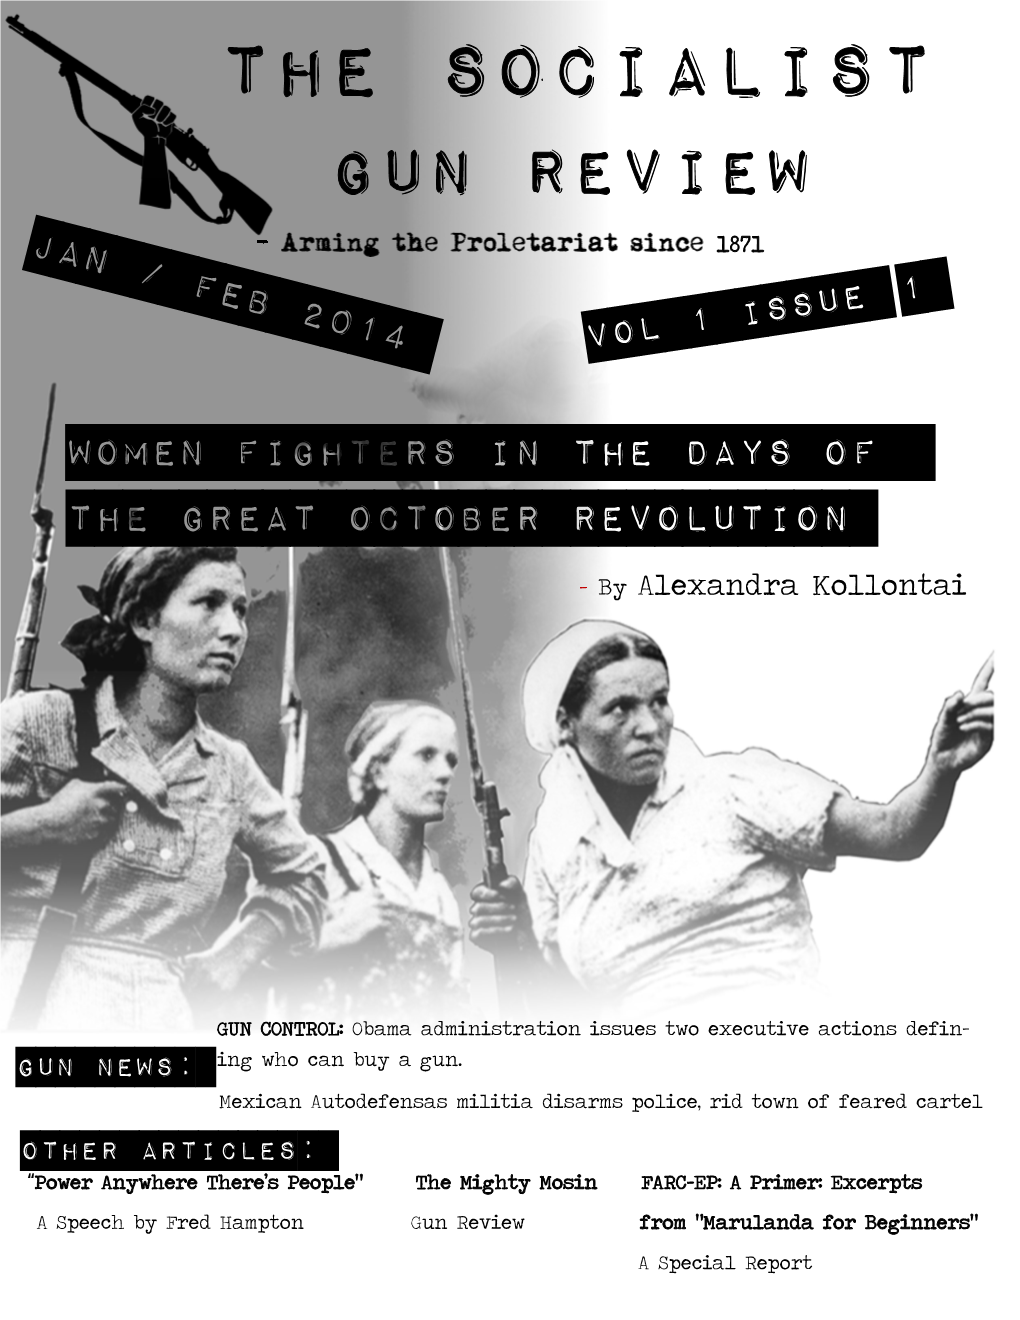 The Socialist Gun Review Jan / Feb 2014 1871 1 Vol 1 Issue